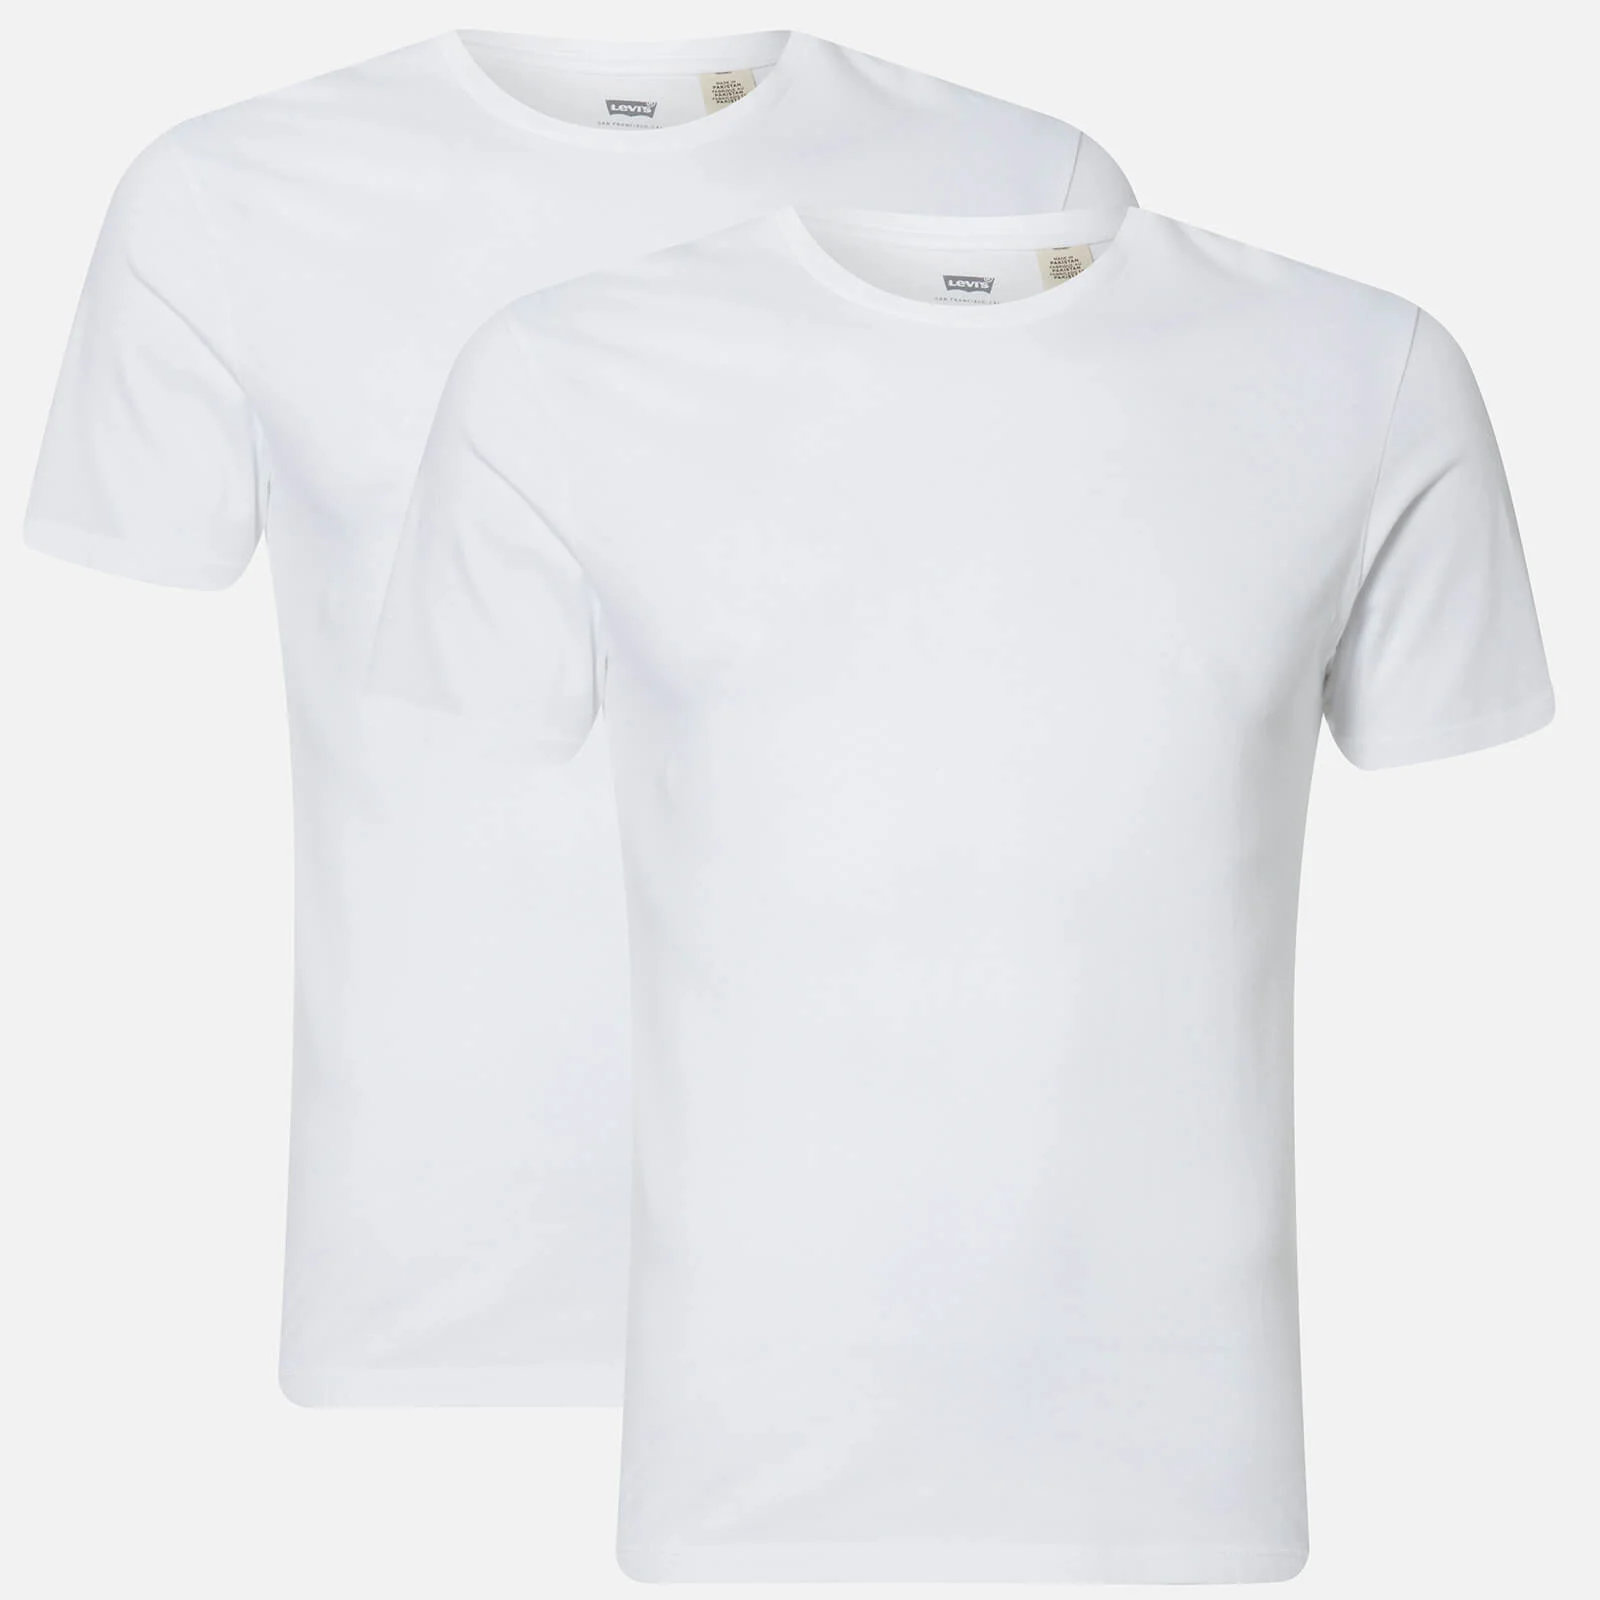 Levi's Men's Slim 2 Pack Crew T-Shirts - White/White Image 1